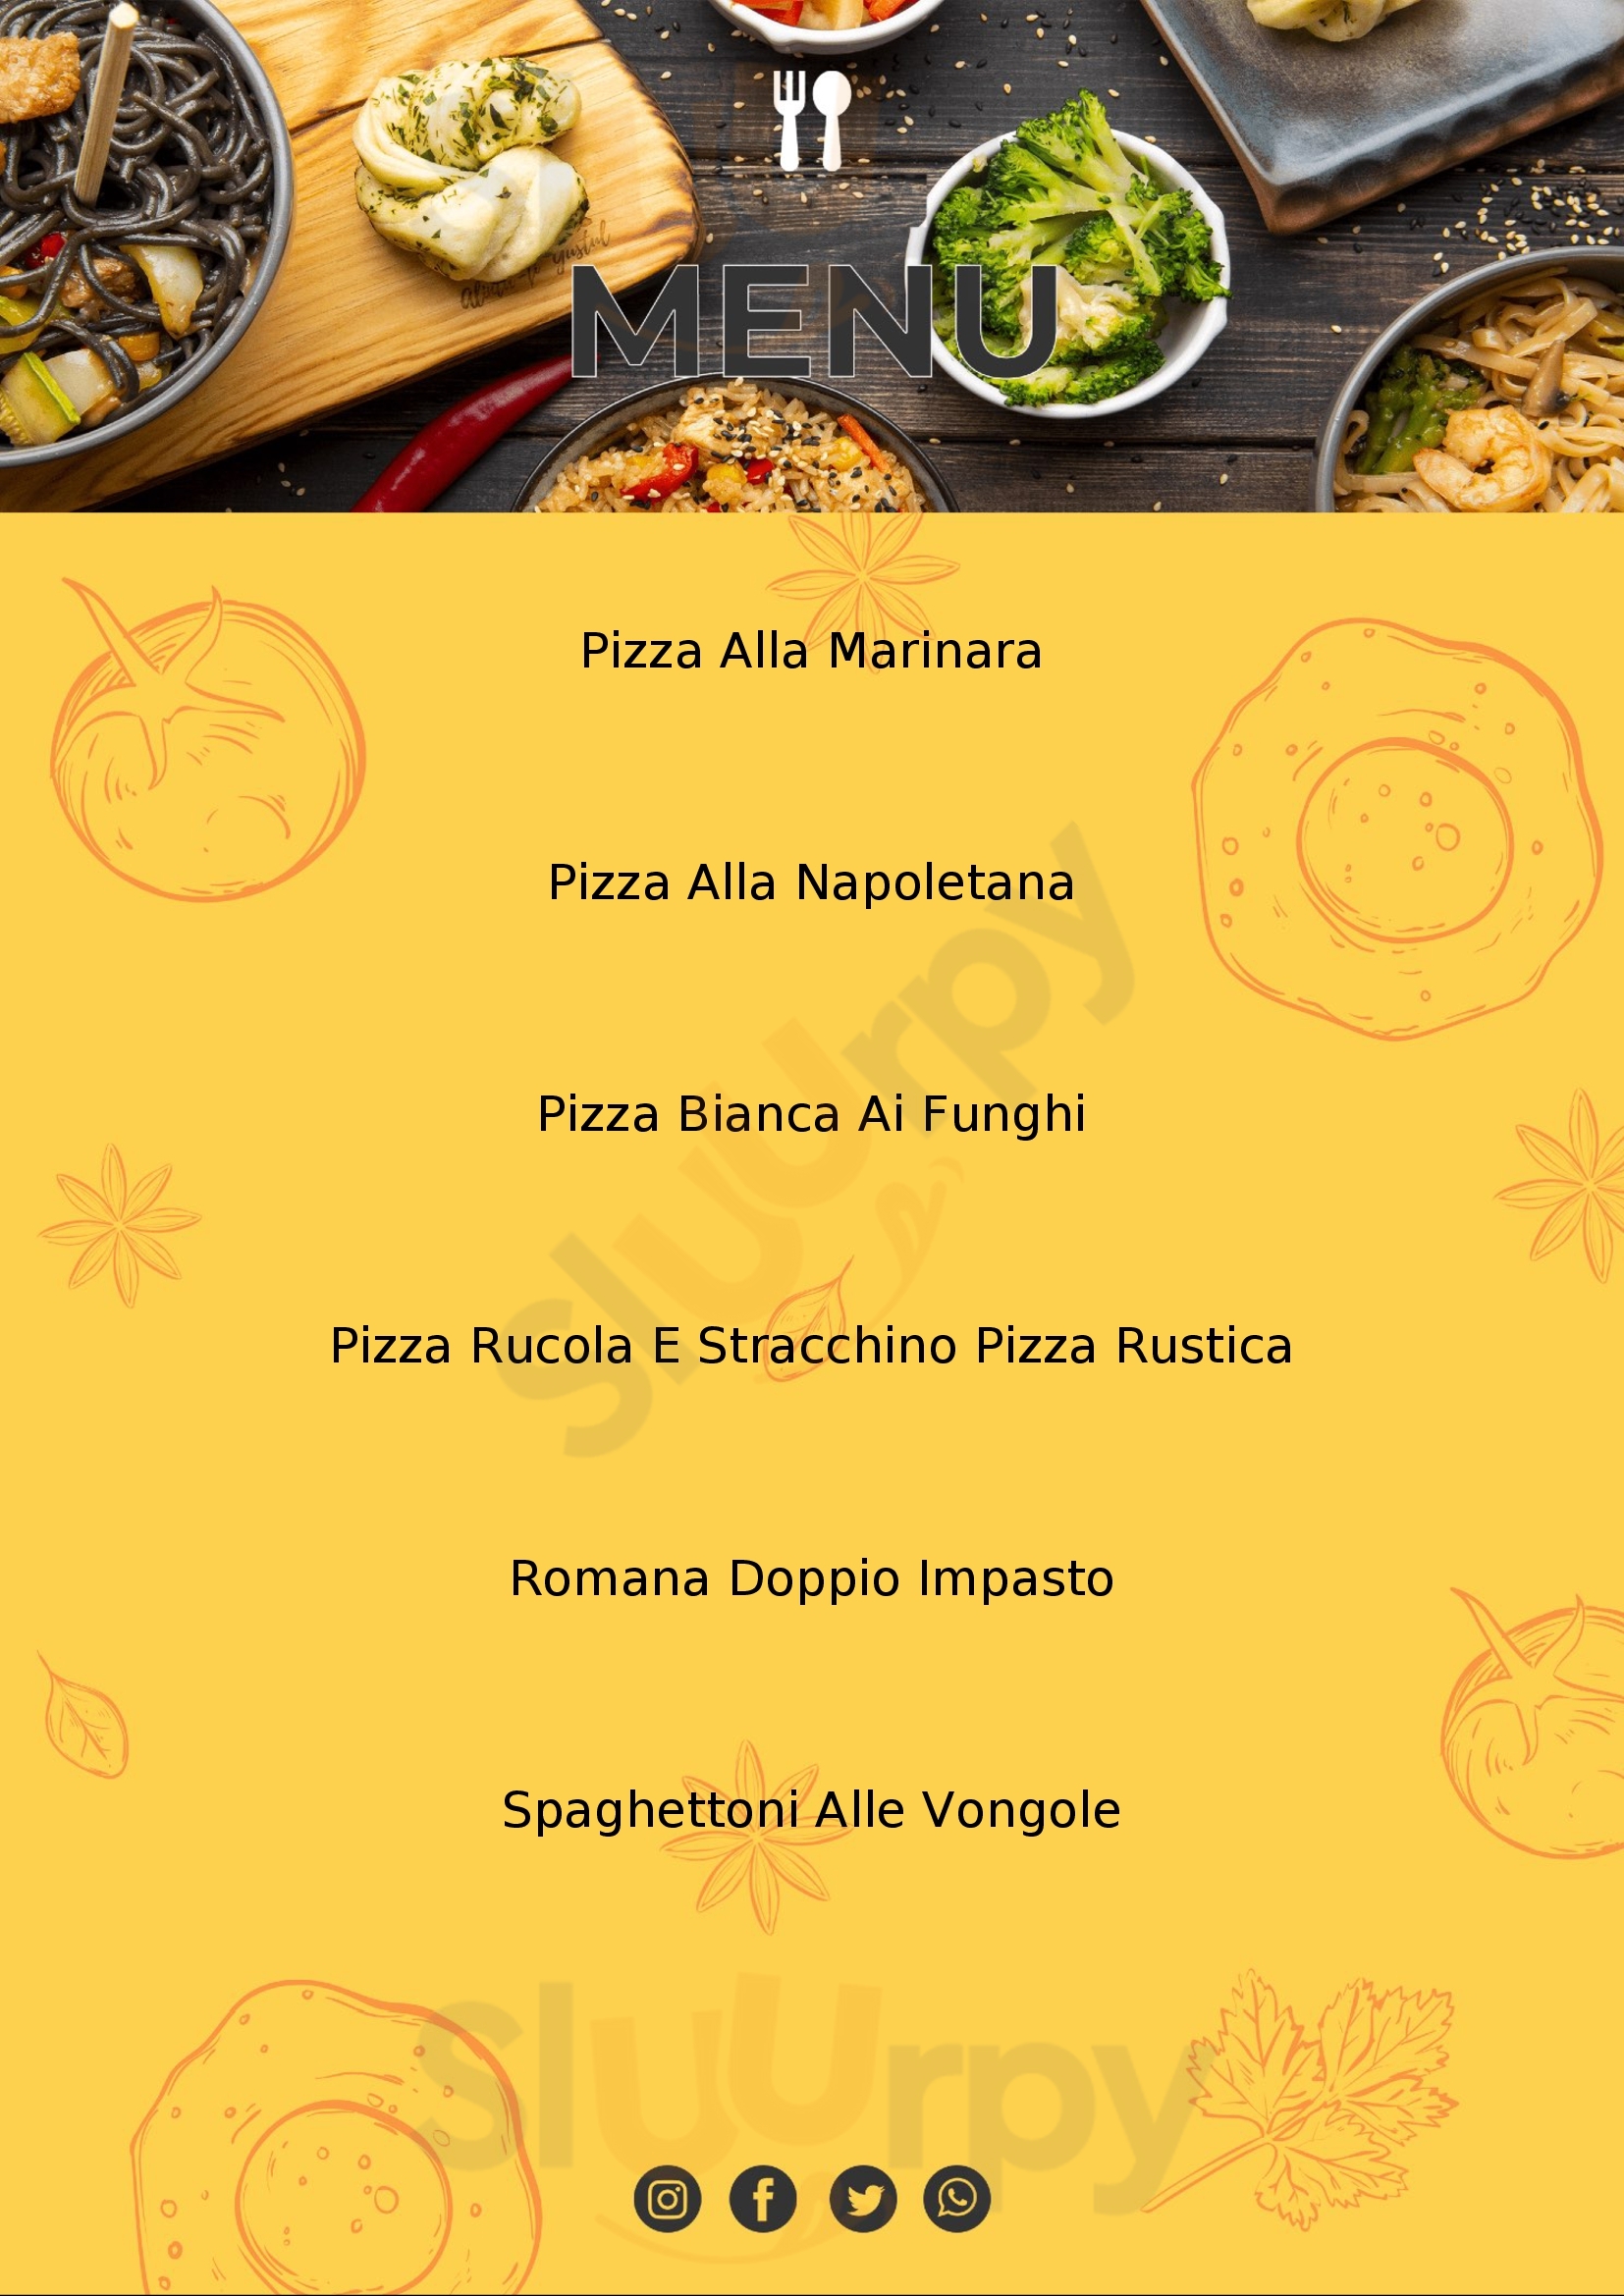 La Rustica Ristorante Pizzeria Riccione menù 1 pagina